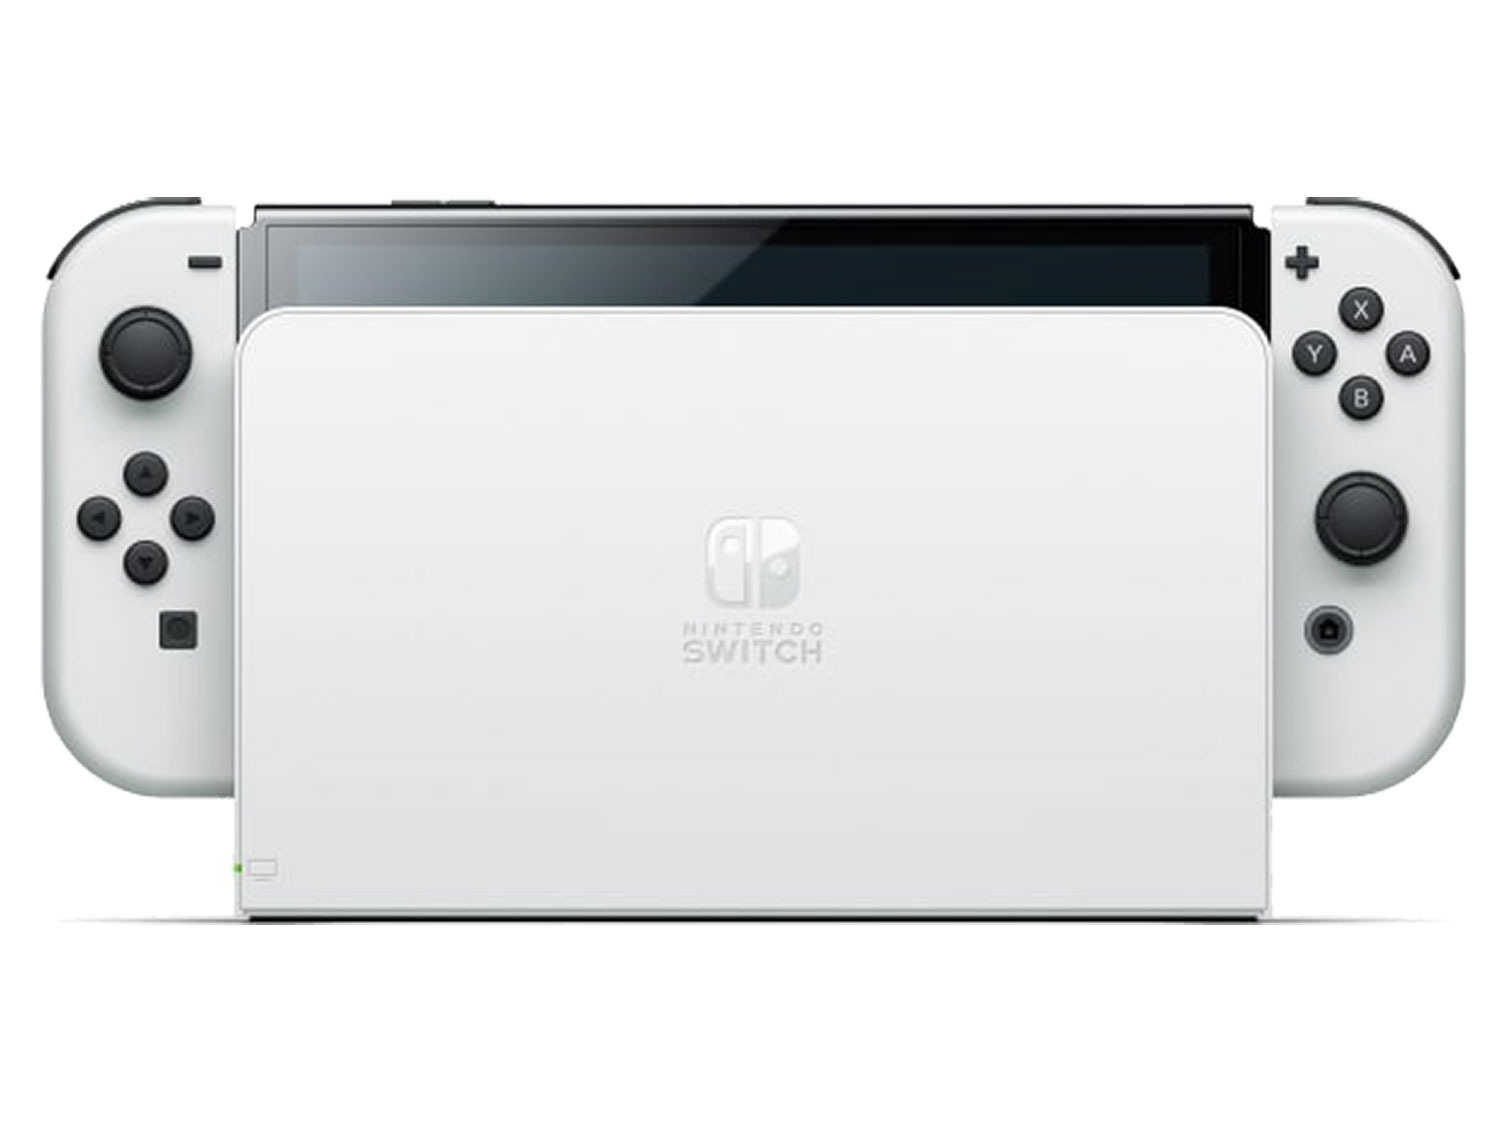 Нинтендо свитч олед. Nintendo Switch OLED. Игровая приставка Nintendo Switch серый олед. Нинтендо свитч олед белый.